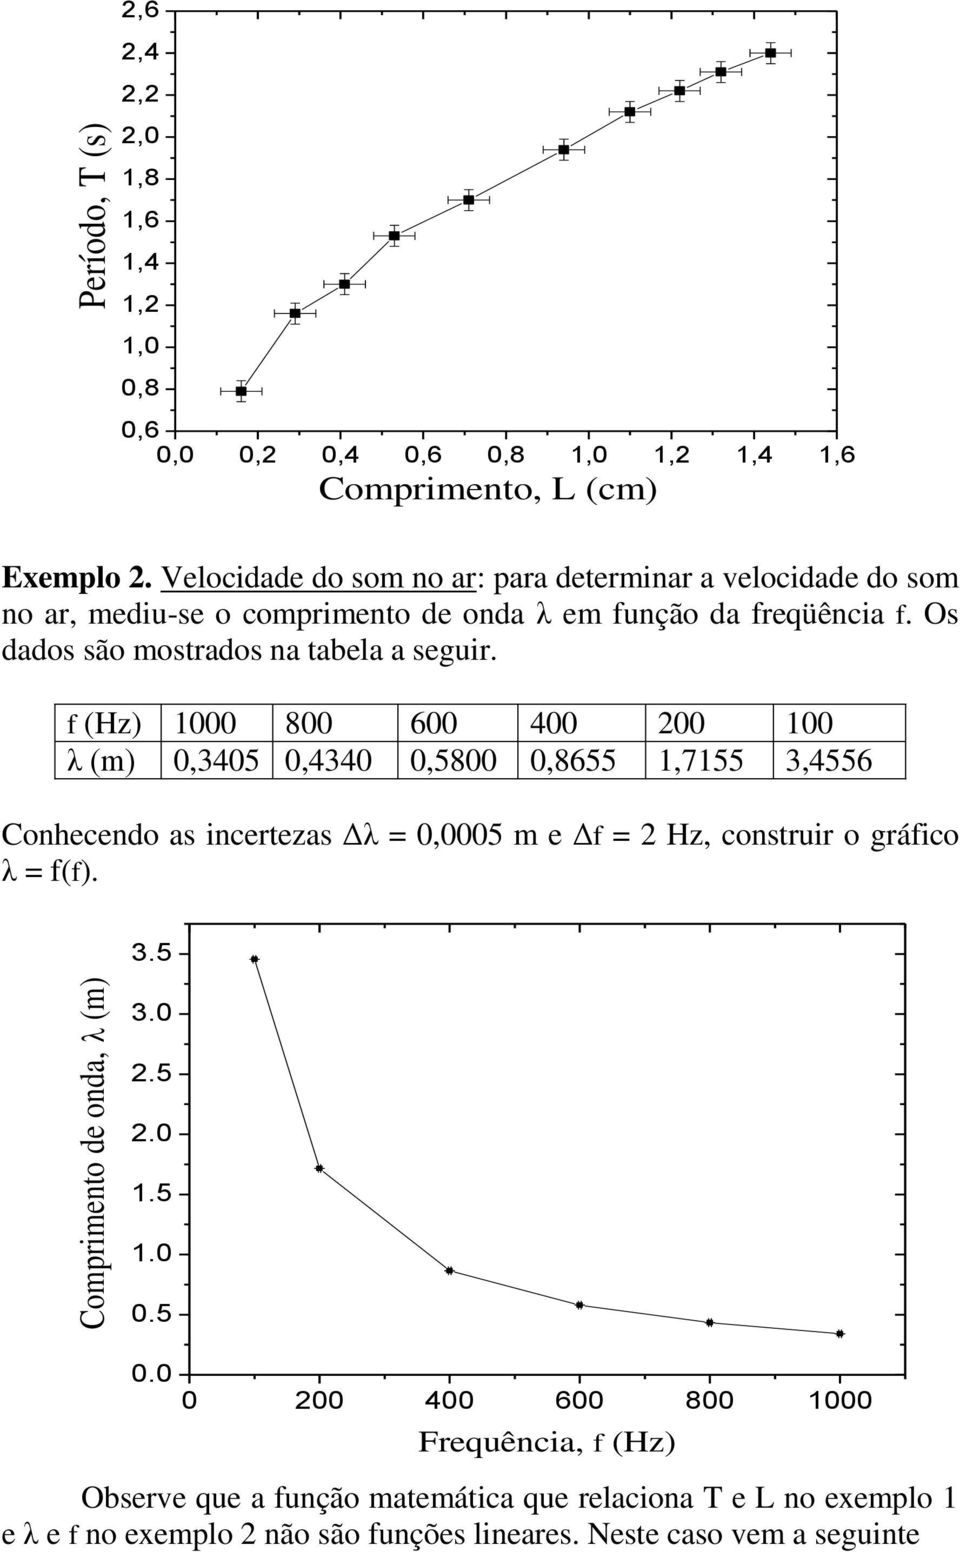 f (Hz) 1000 800 600 400 200 100 λ (m) 0,3405 0,4340 0,5800 0,8655 1,7155 3,4556 Conhecendo as incertezas Δλ = 0,0005 m e Δf = 2 Hz, construir o gráfico λ = f(f). 3.5 3.0 2.5 2.